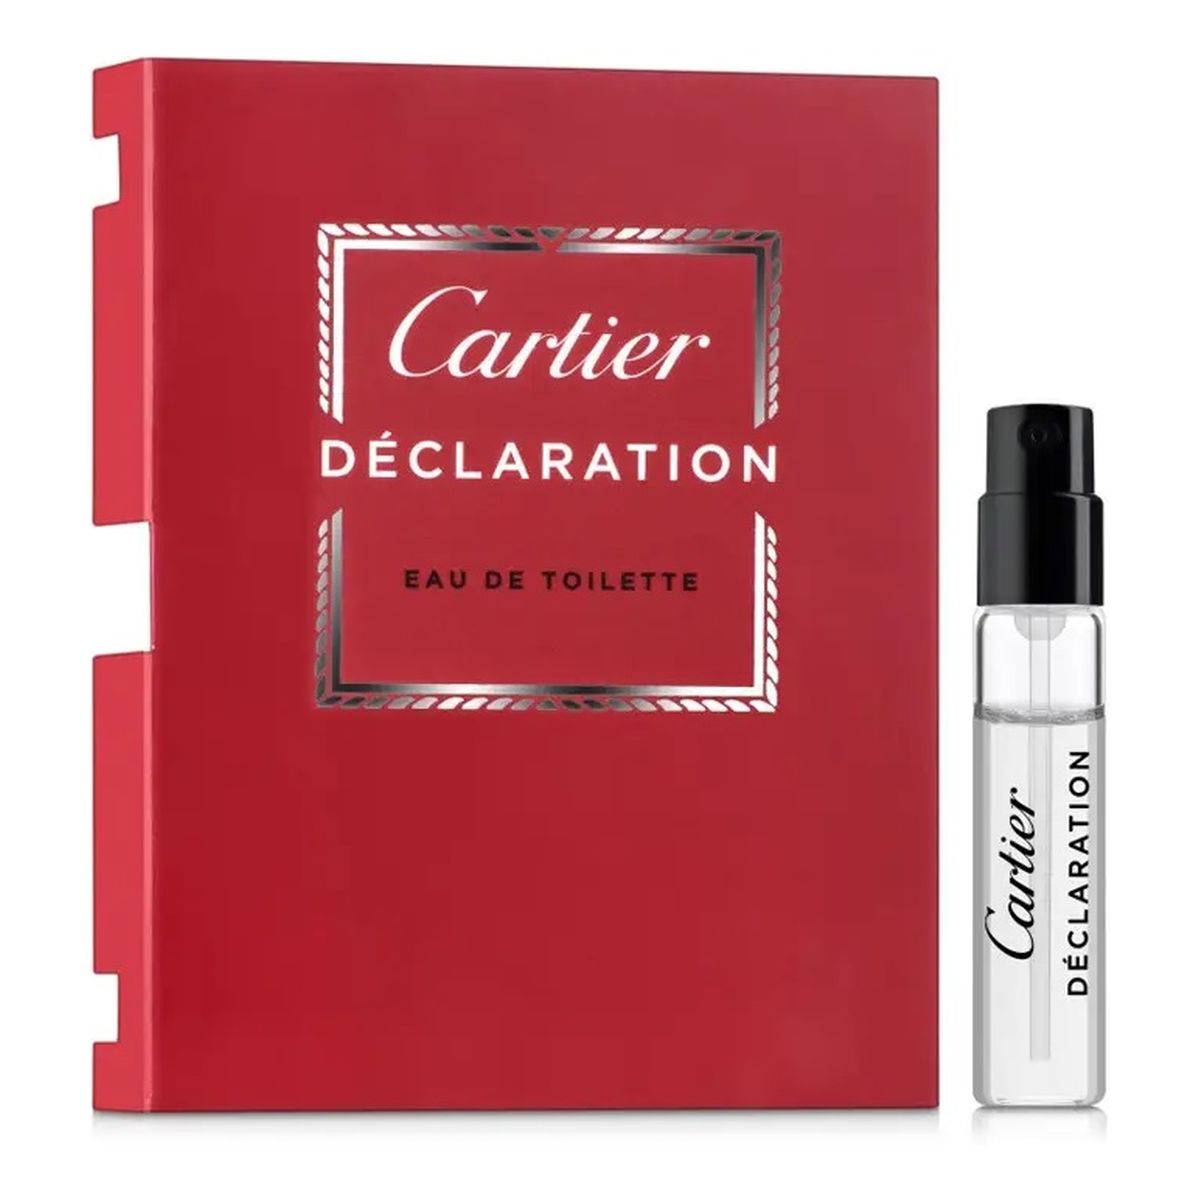 Cartier Declaration Woda toaletowa spray próbka 2ml